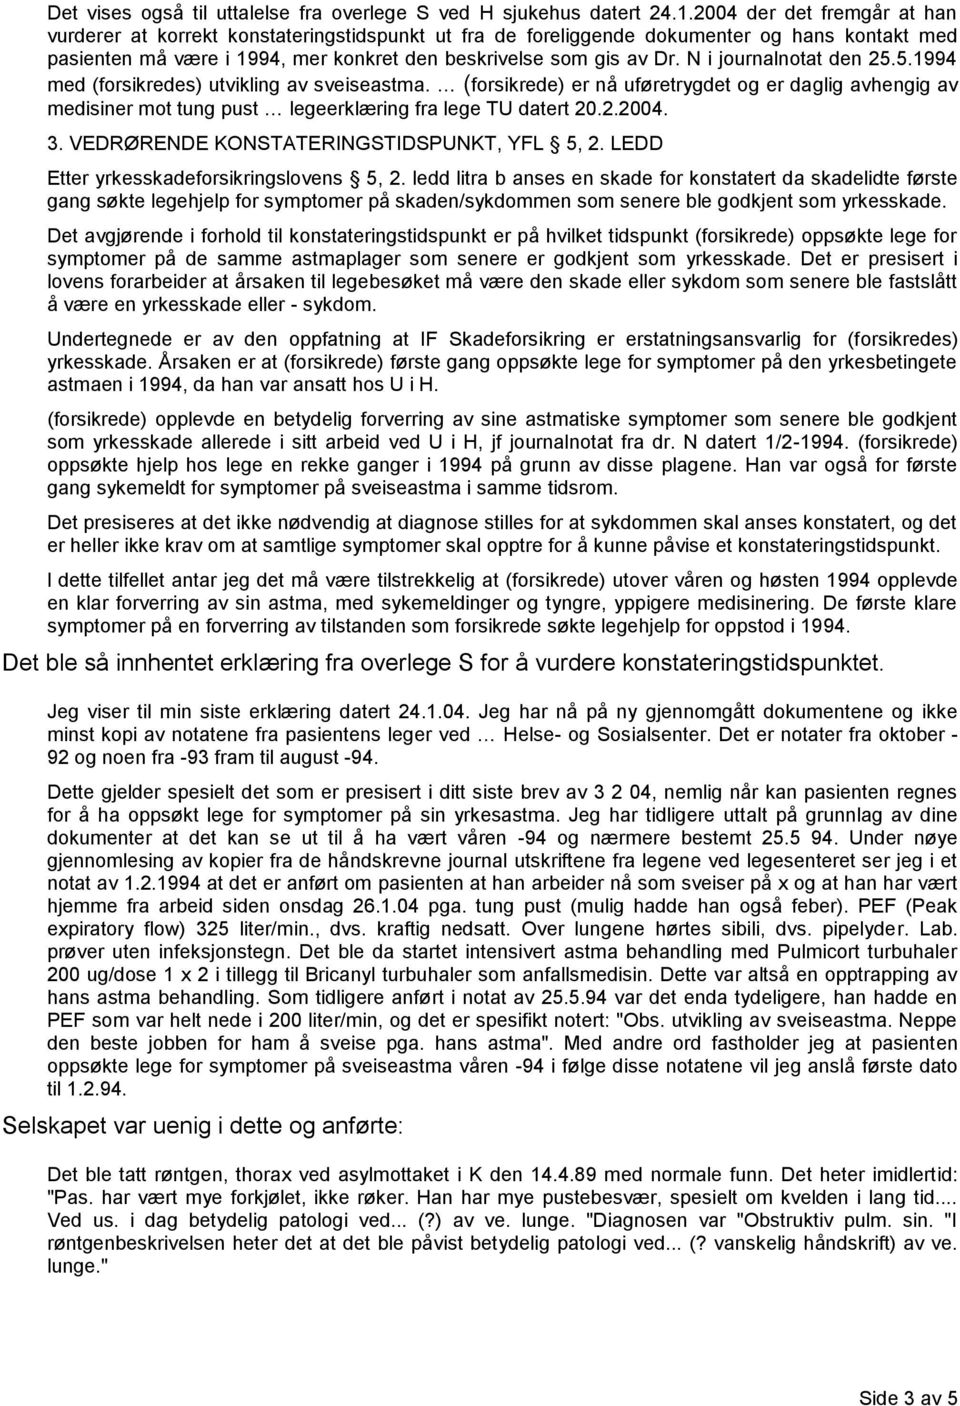 N i journalnotat den 25.5.1994 med (forsikredes) utvikling av sveiseastma. (forsikrede) er nå uføretrygdet og er daglig avhengig av medisiner mot tung pust legeerklæring fra lege TU datert 20.2.2004.